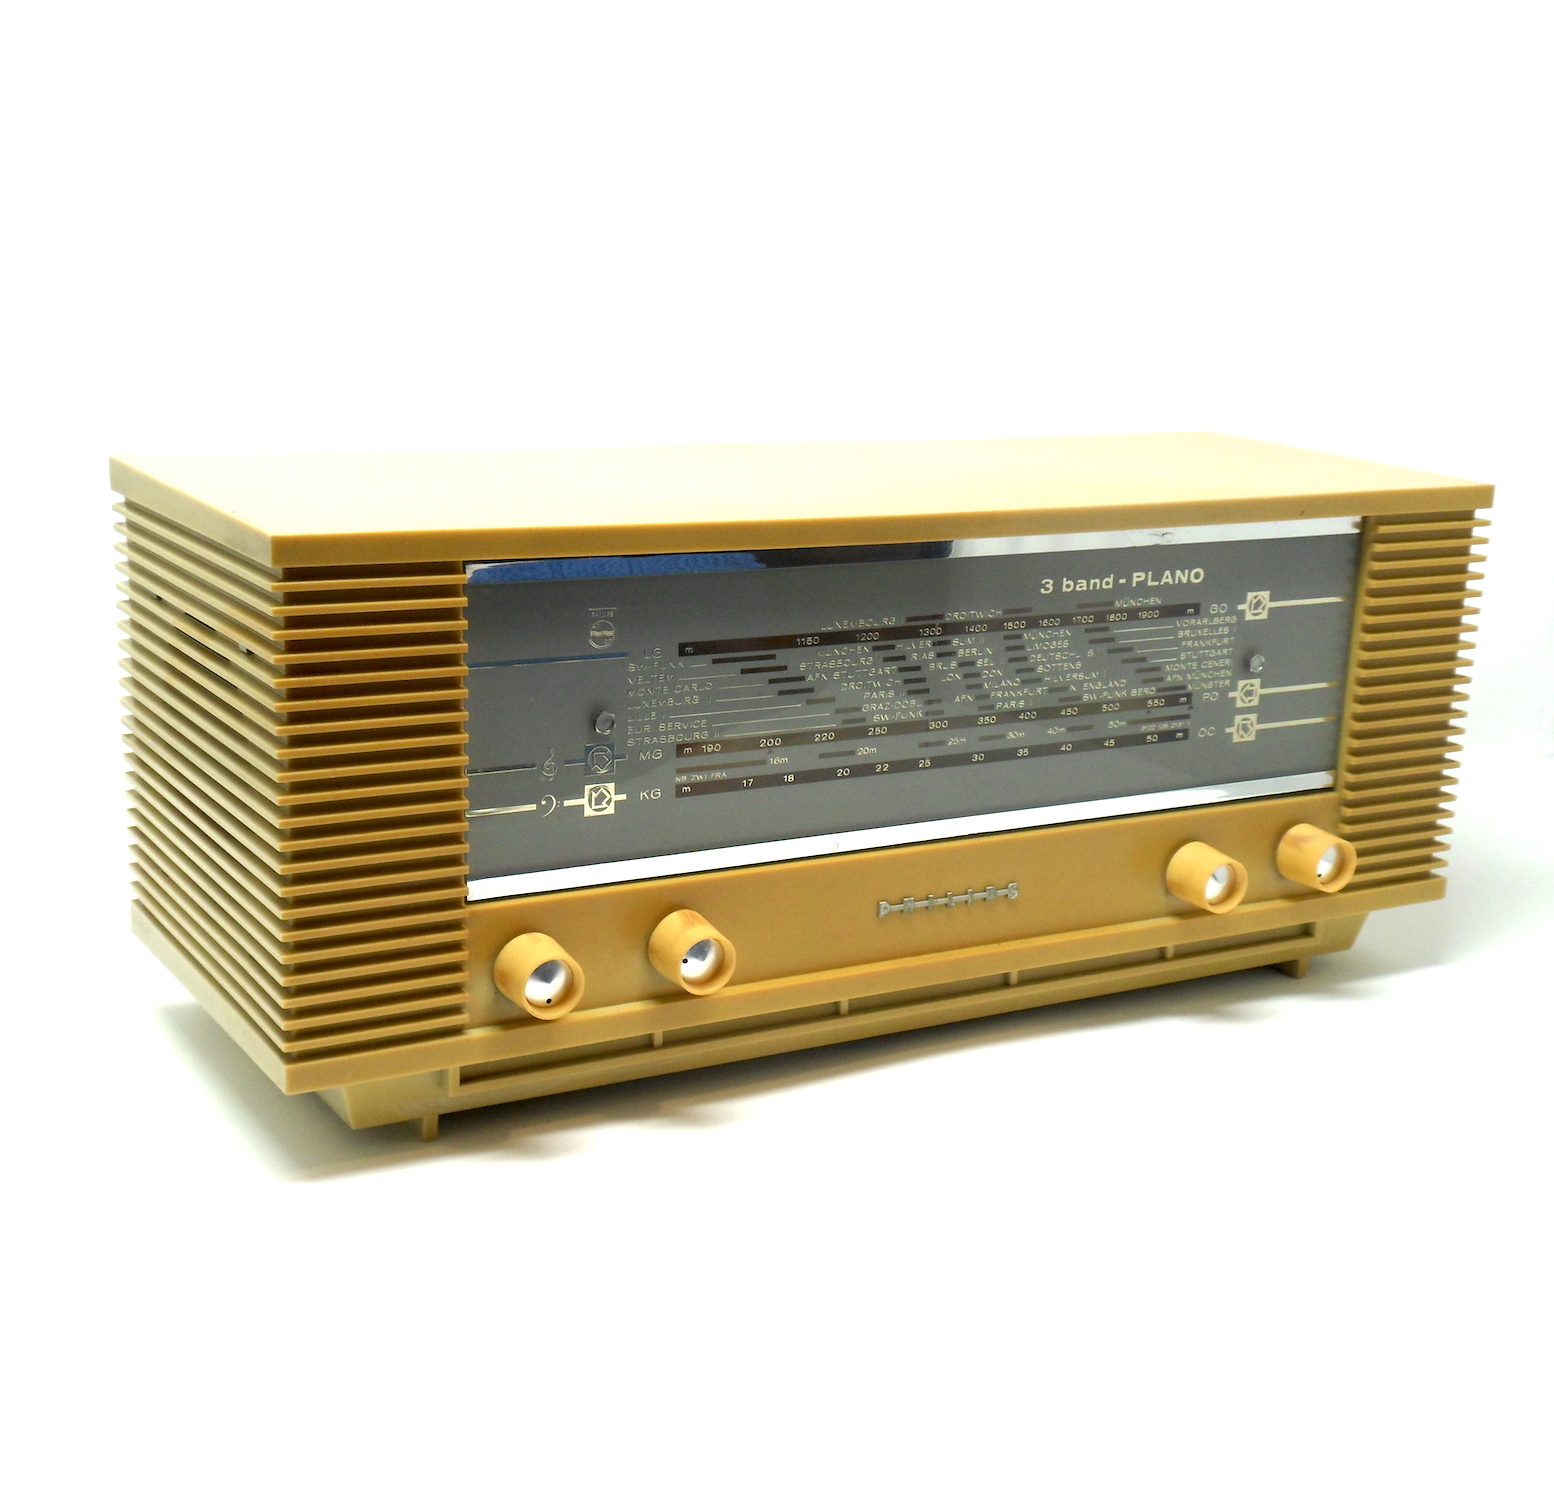 Radio Philips B3X40U, 1964, color amarillo: Modelo antiguo y muy vintage.